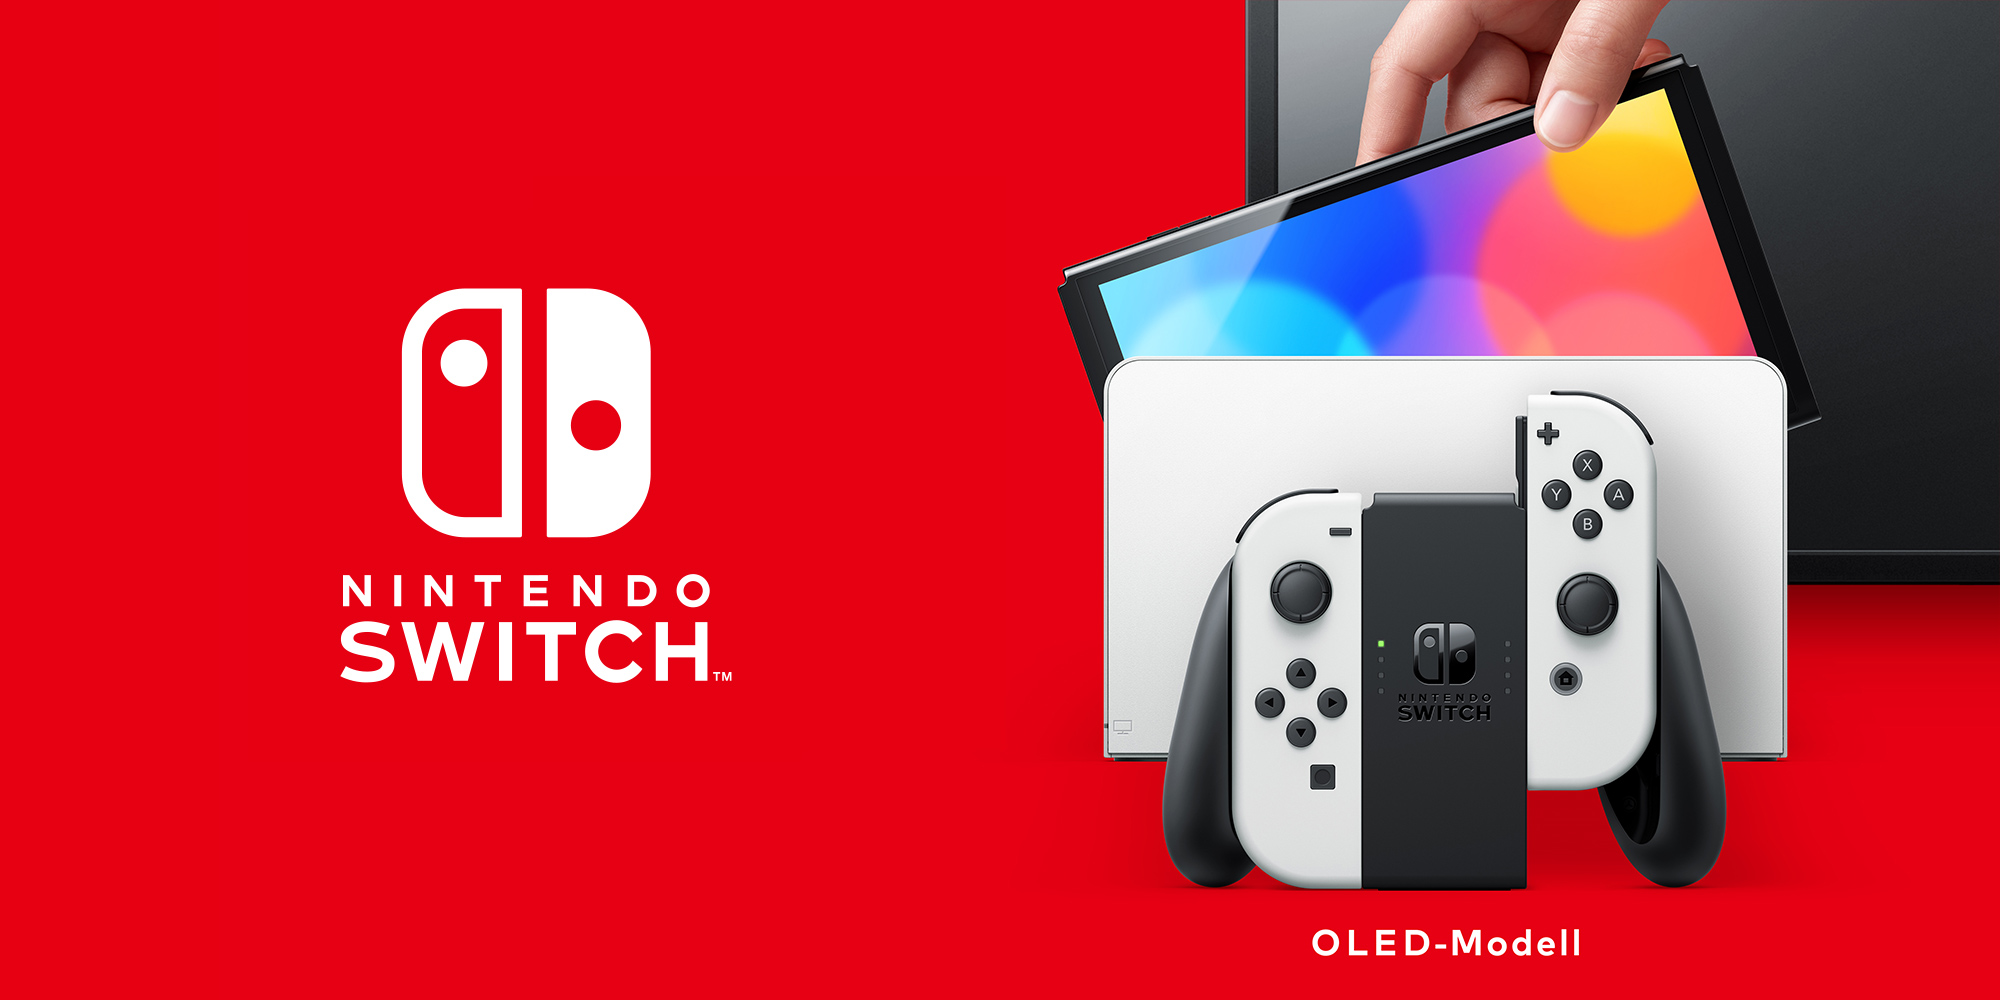 Nintendo Switch Hardware Nintendo OLED-Modell | – 